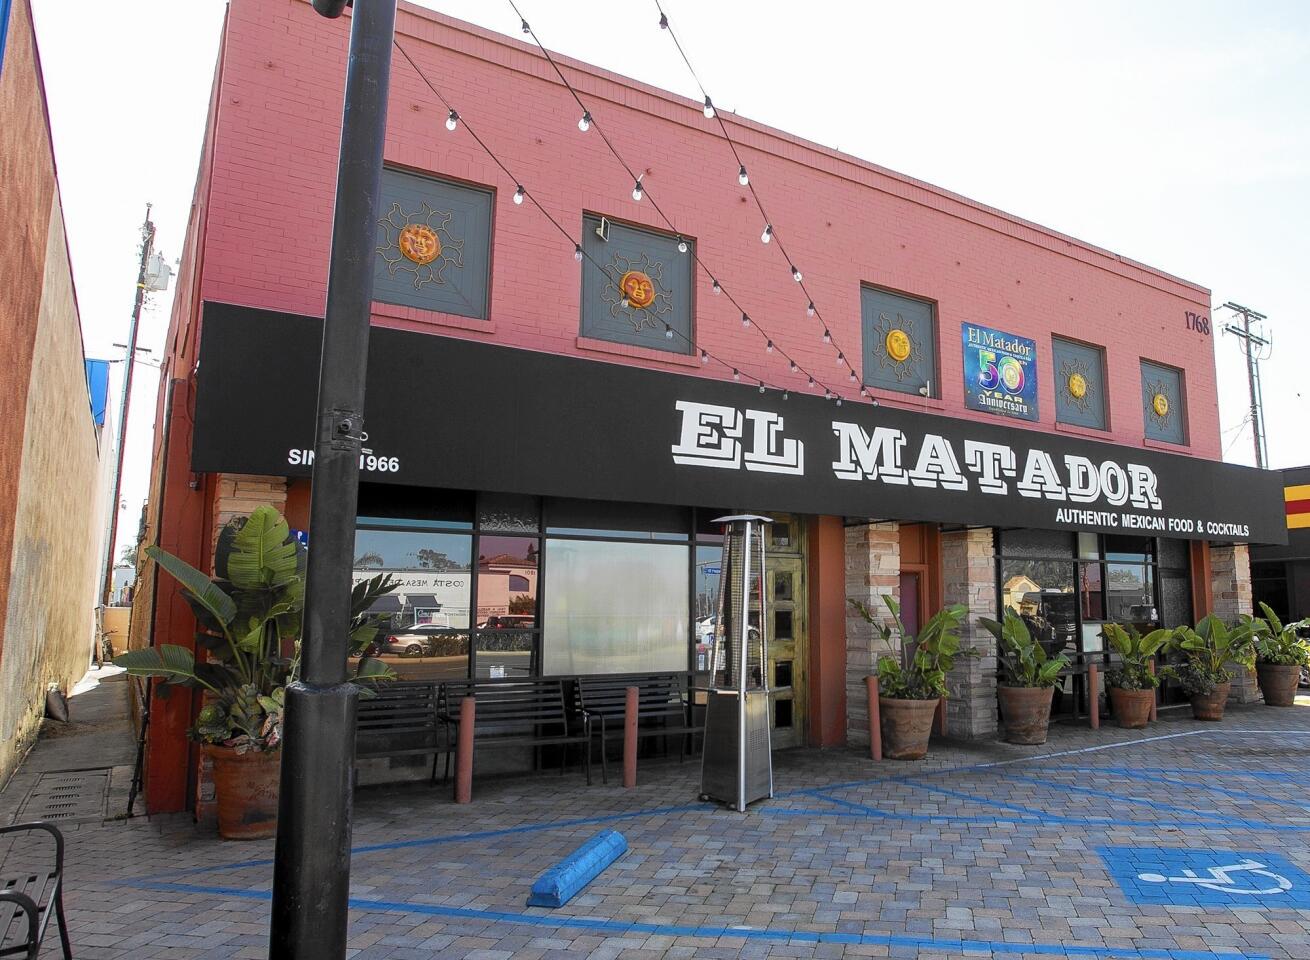 Costa Mesa's El Matador restaurant